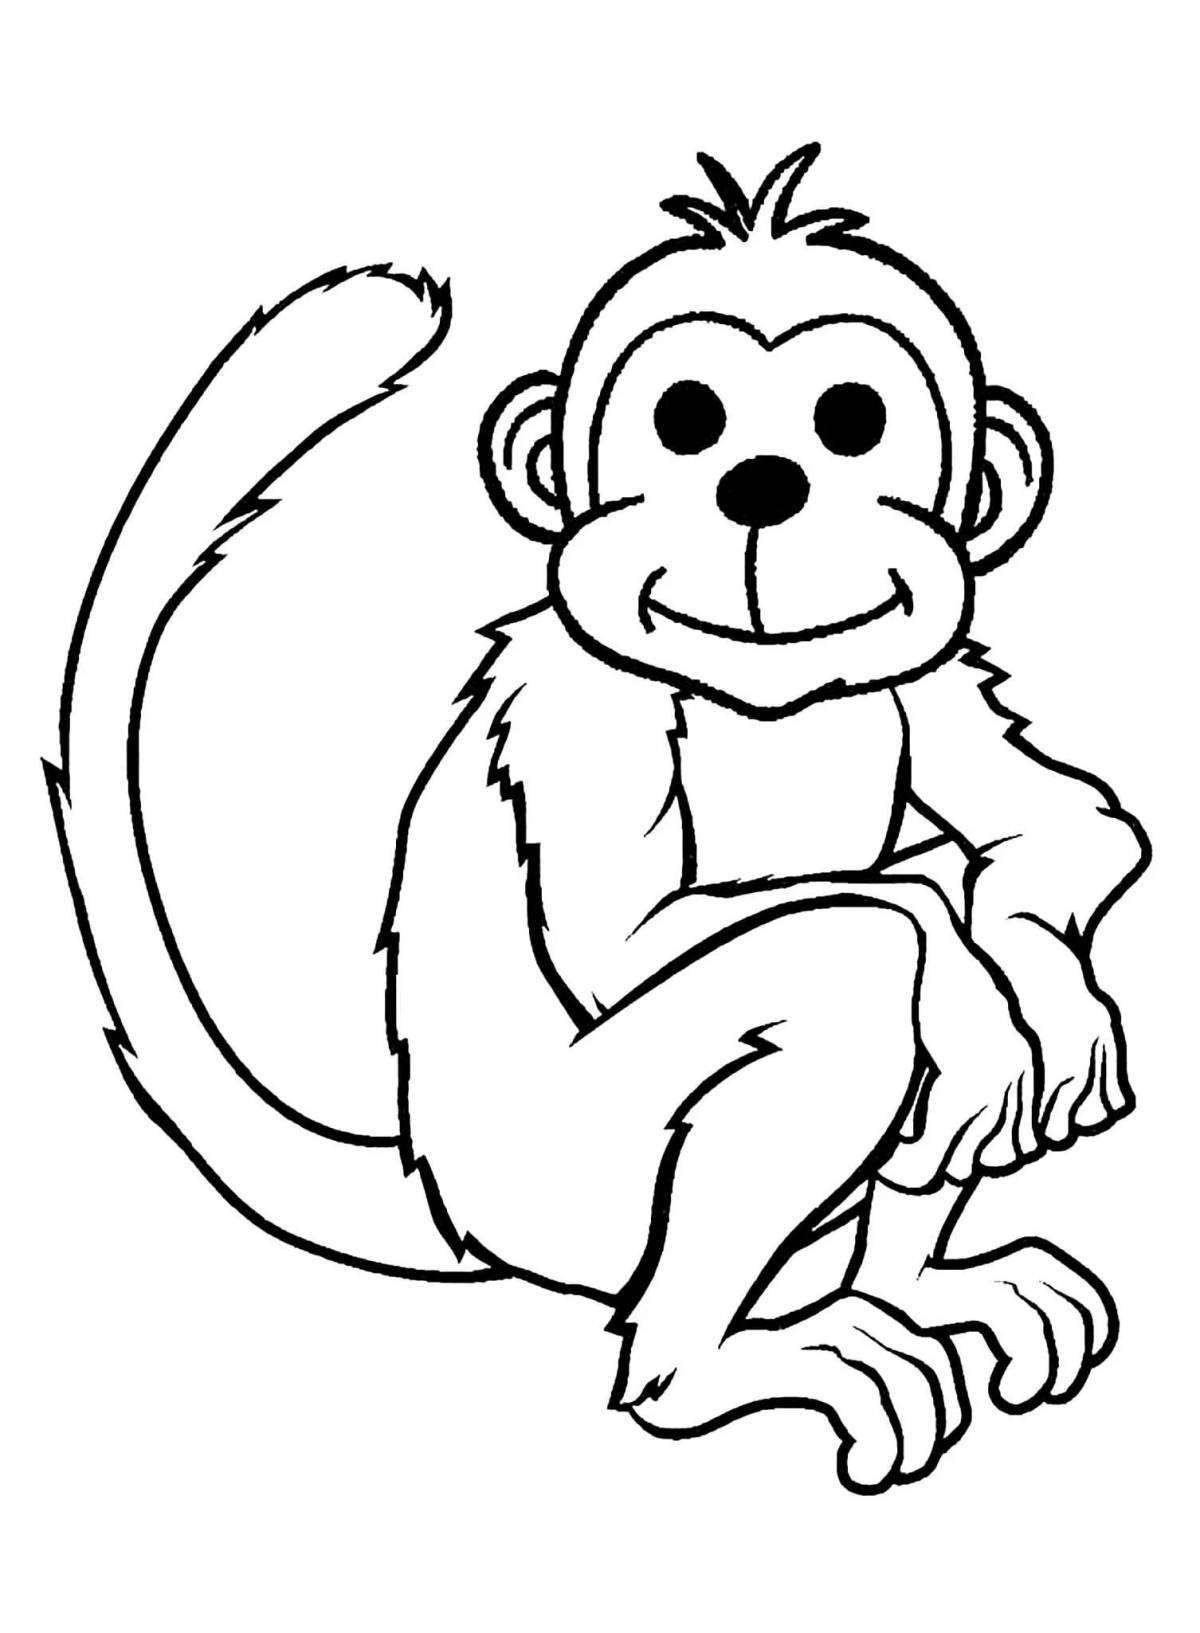 Веселая страница раскраски фигурки обезьяны